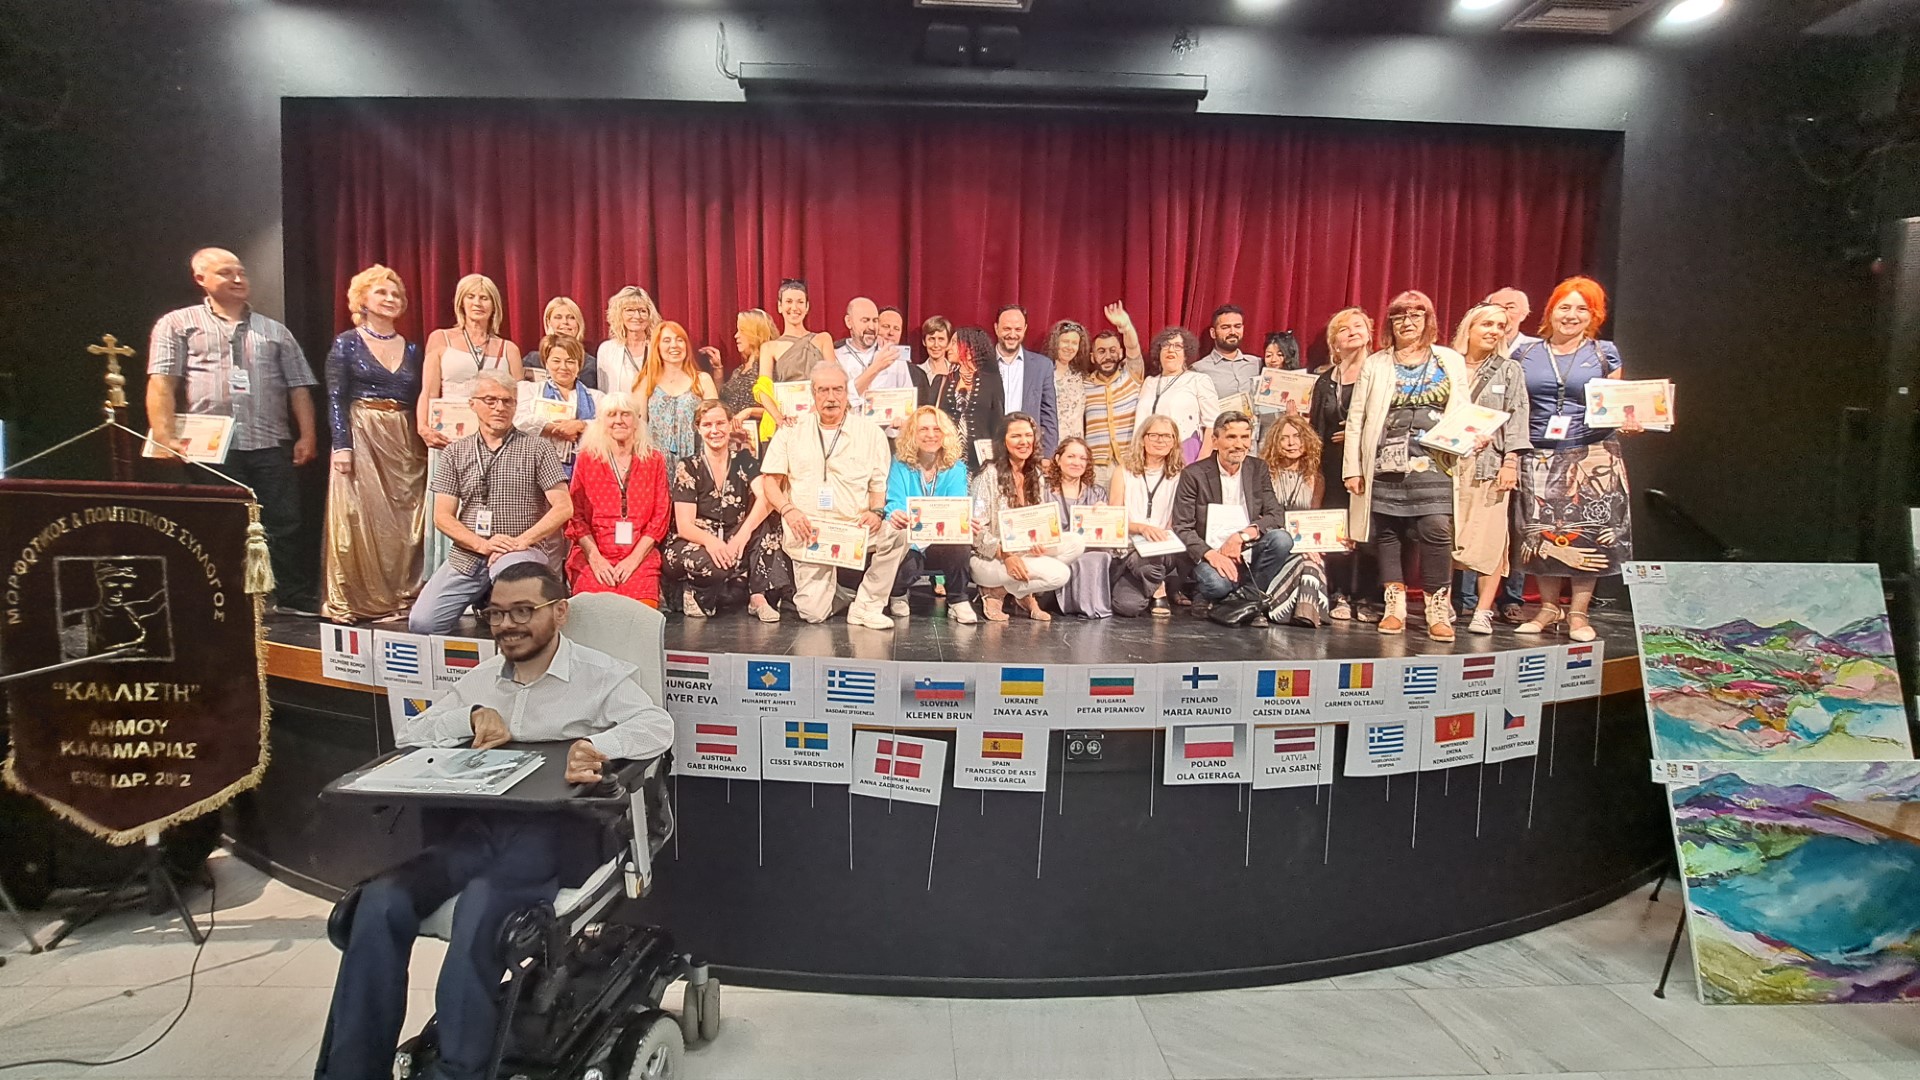 Με επιτυχία ολοκληρώθηκε το 1ο Διεθνές Συμπόσιο Ζωγραφικής στην Καλαμαριά